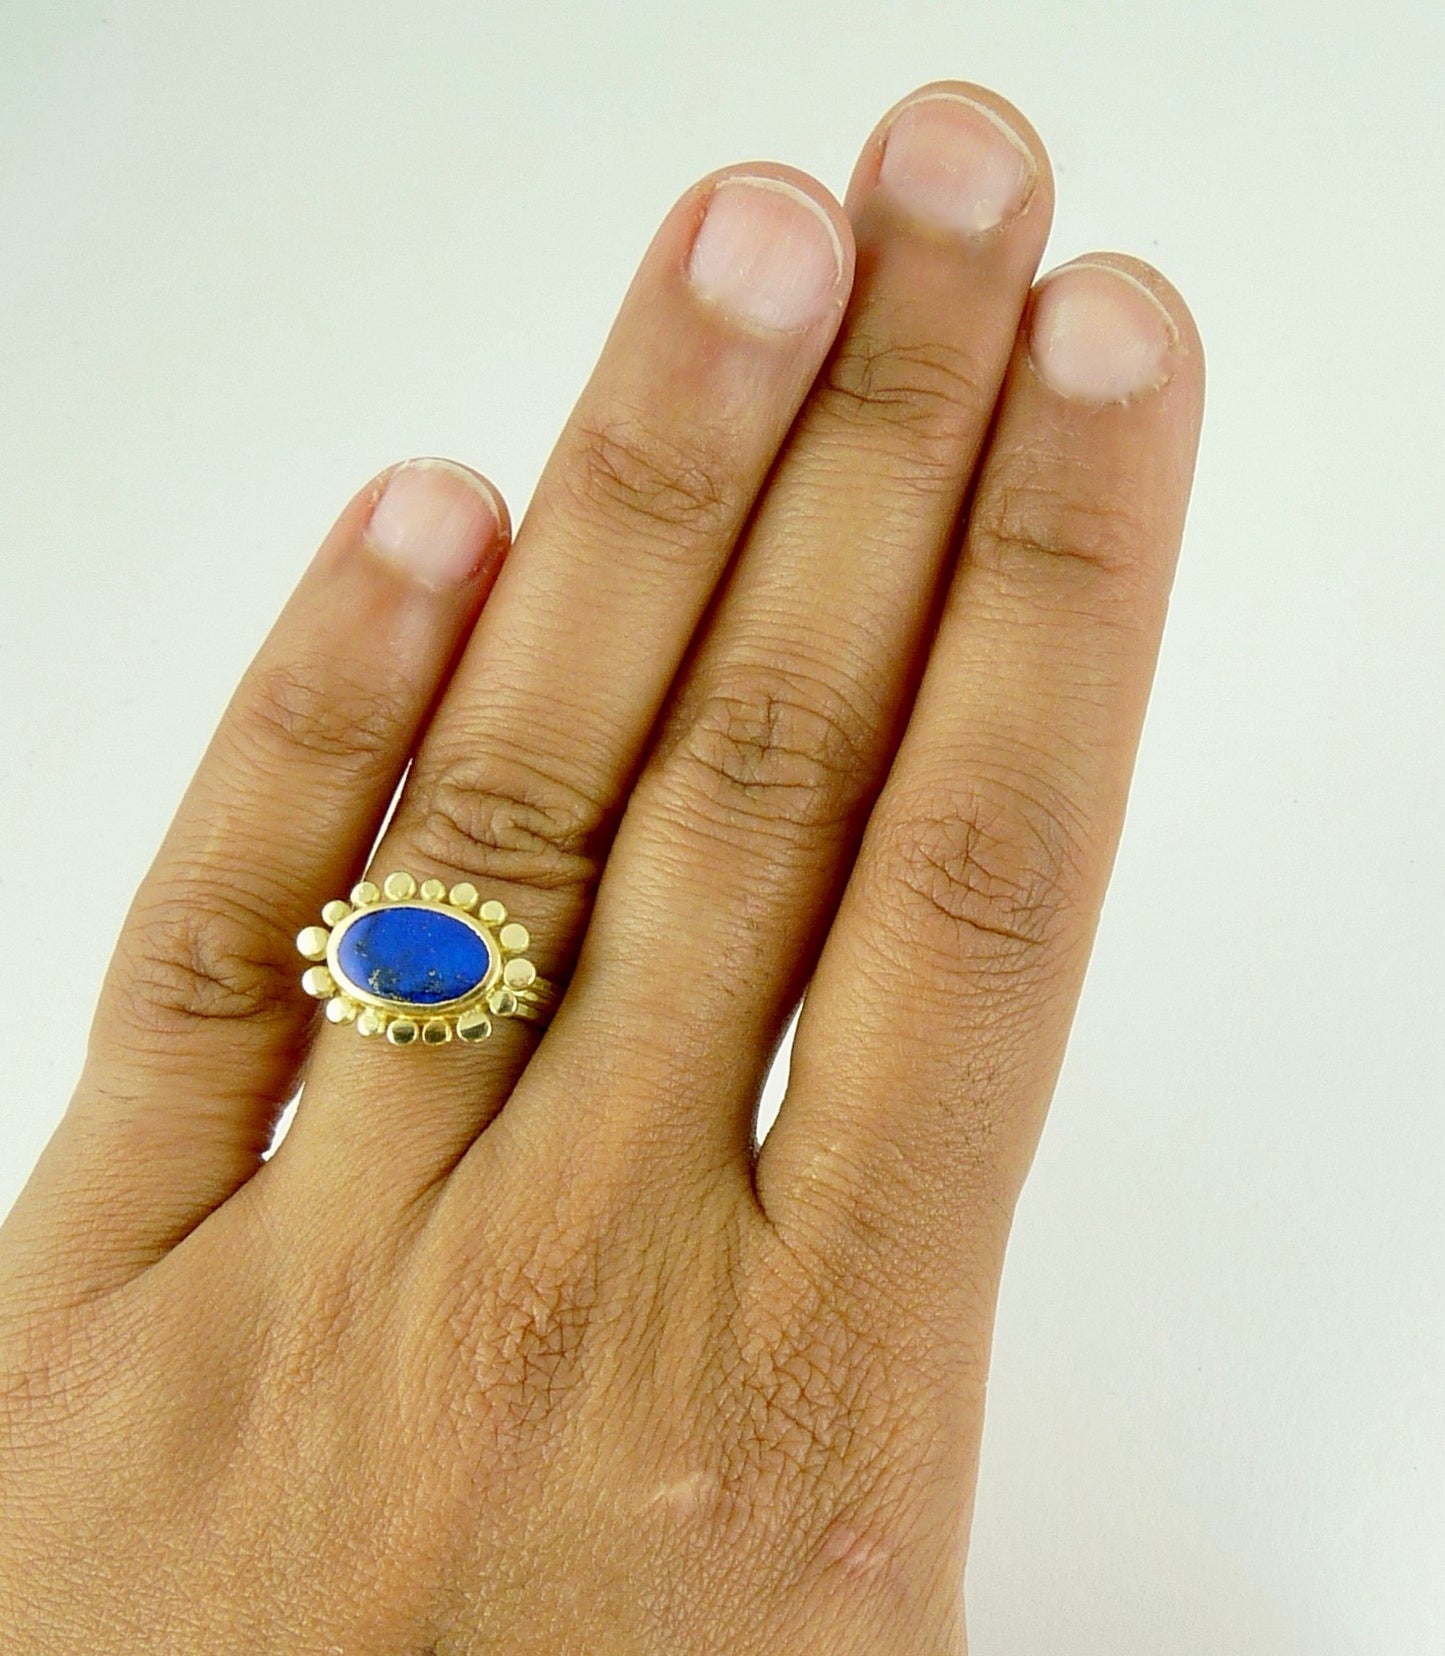 18ct gold Lapis Lazuli Courtesan ring